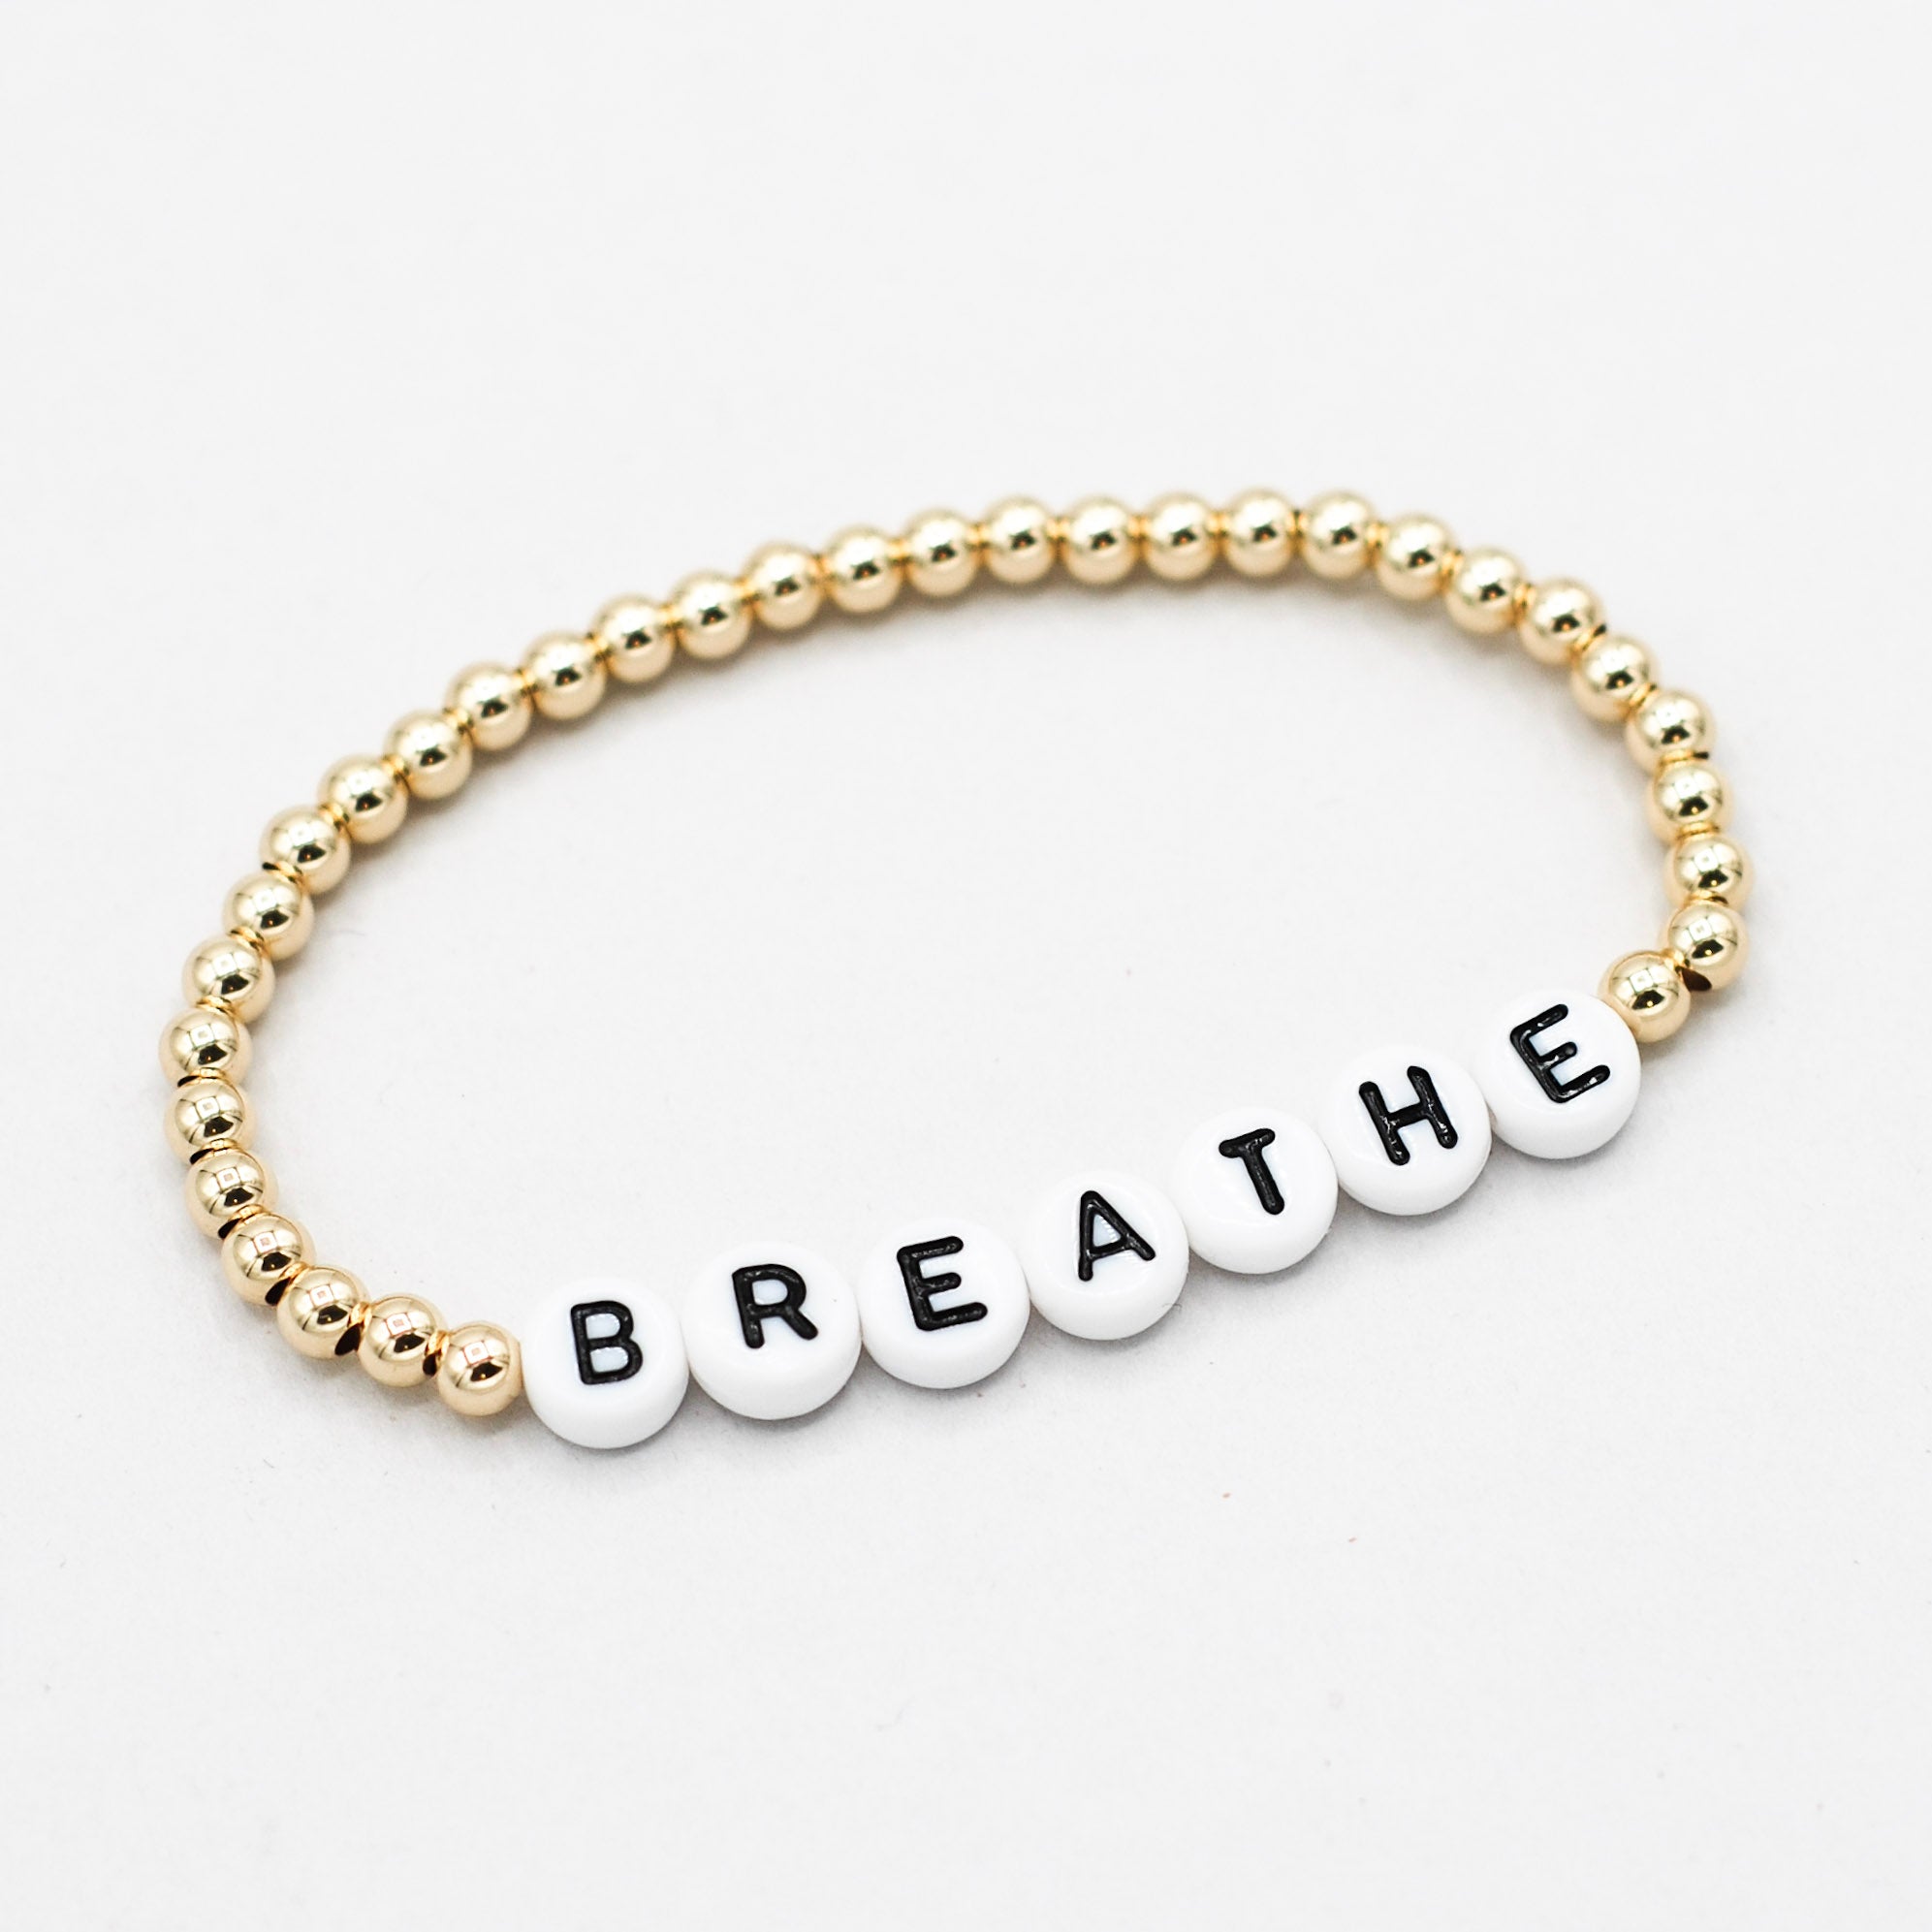 Intention 'Breathe' 4mm 14k Gold filled Bracelet